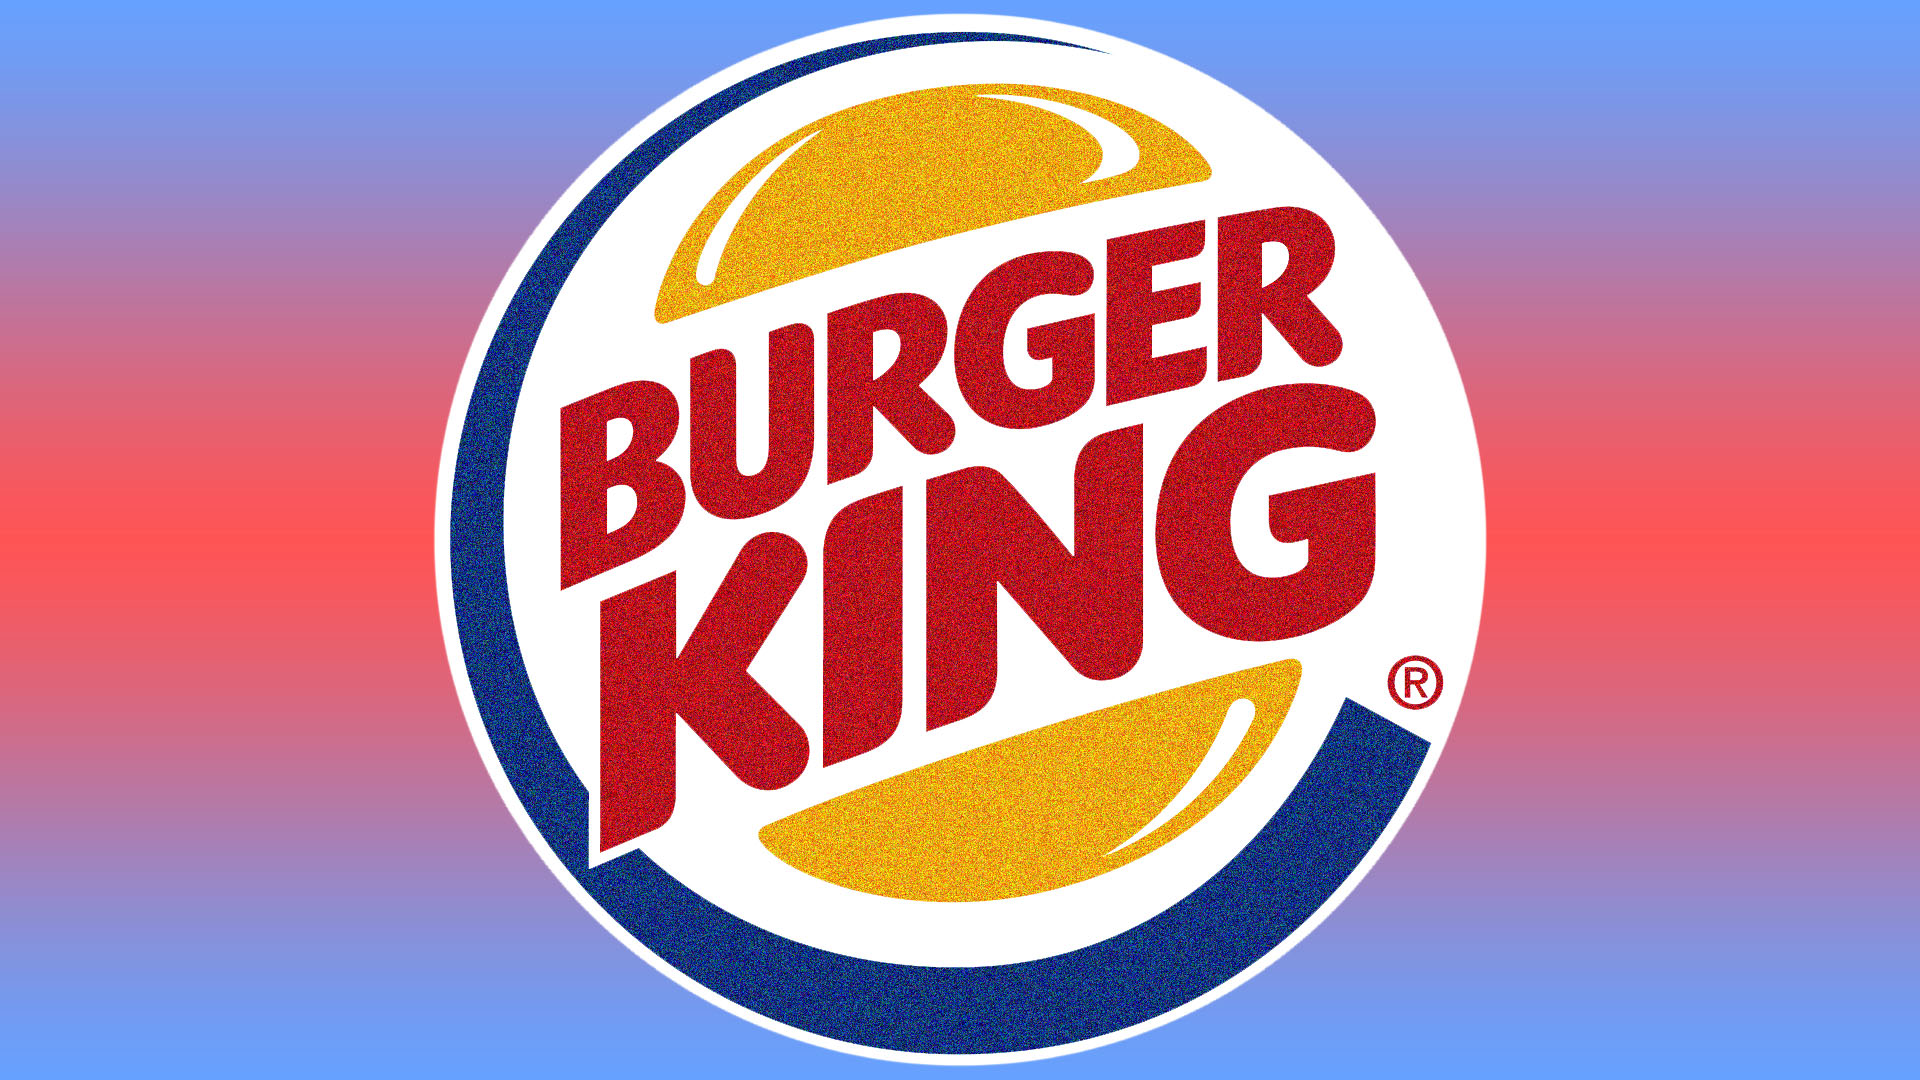 Burger King HD Wallpaper You Are Ing Jpg